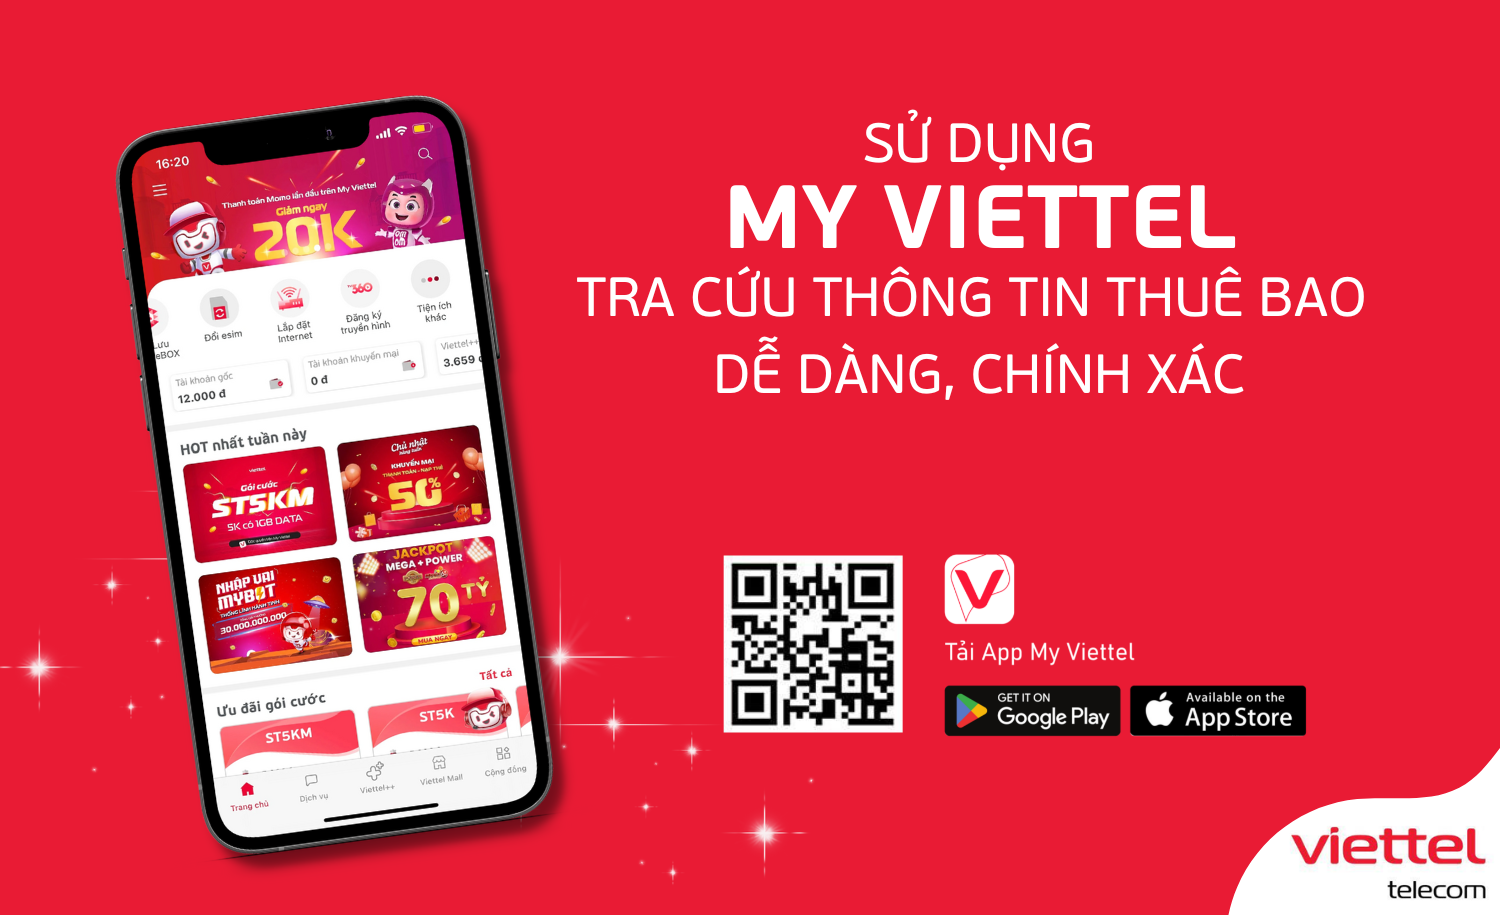 Viettel Telecom là một trong những nhà mạng lớn nhất tại Việt Nam với các dịch vụ đa dạng và chất lượng cao. Hình ảnh sẽ giúp bạn hiểu rõ hơn về các sản phẩm và dịch vụ của Viettel Telecom, từ internet, truyền hình đến các giải pháp doanh nghiệp.